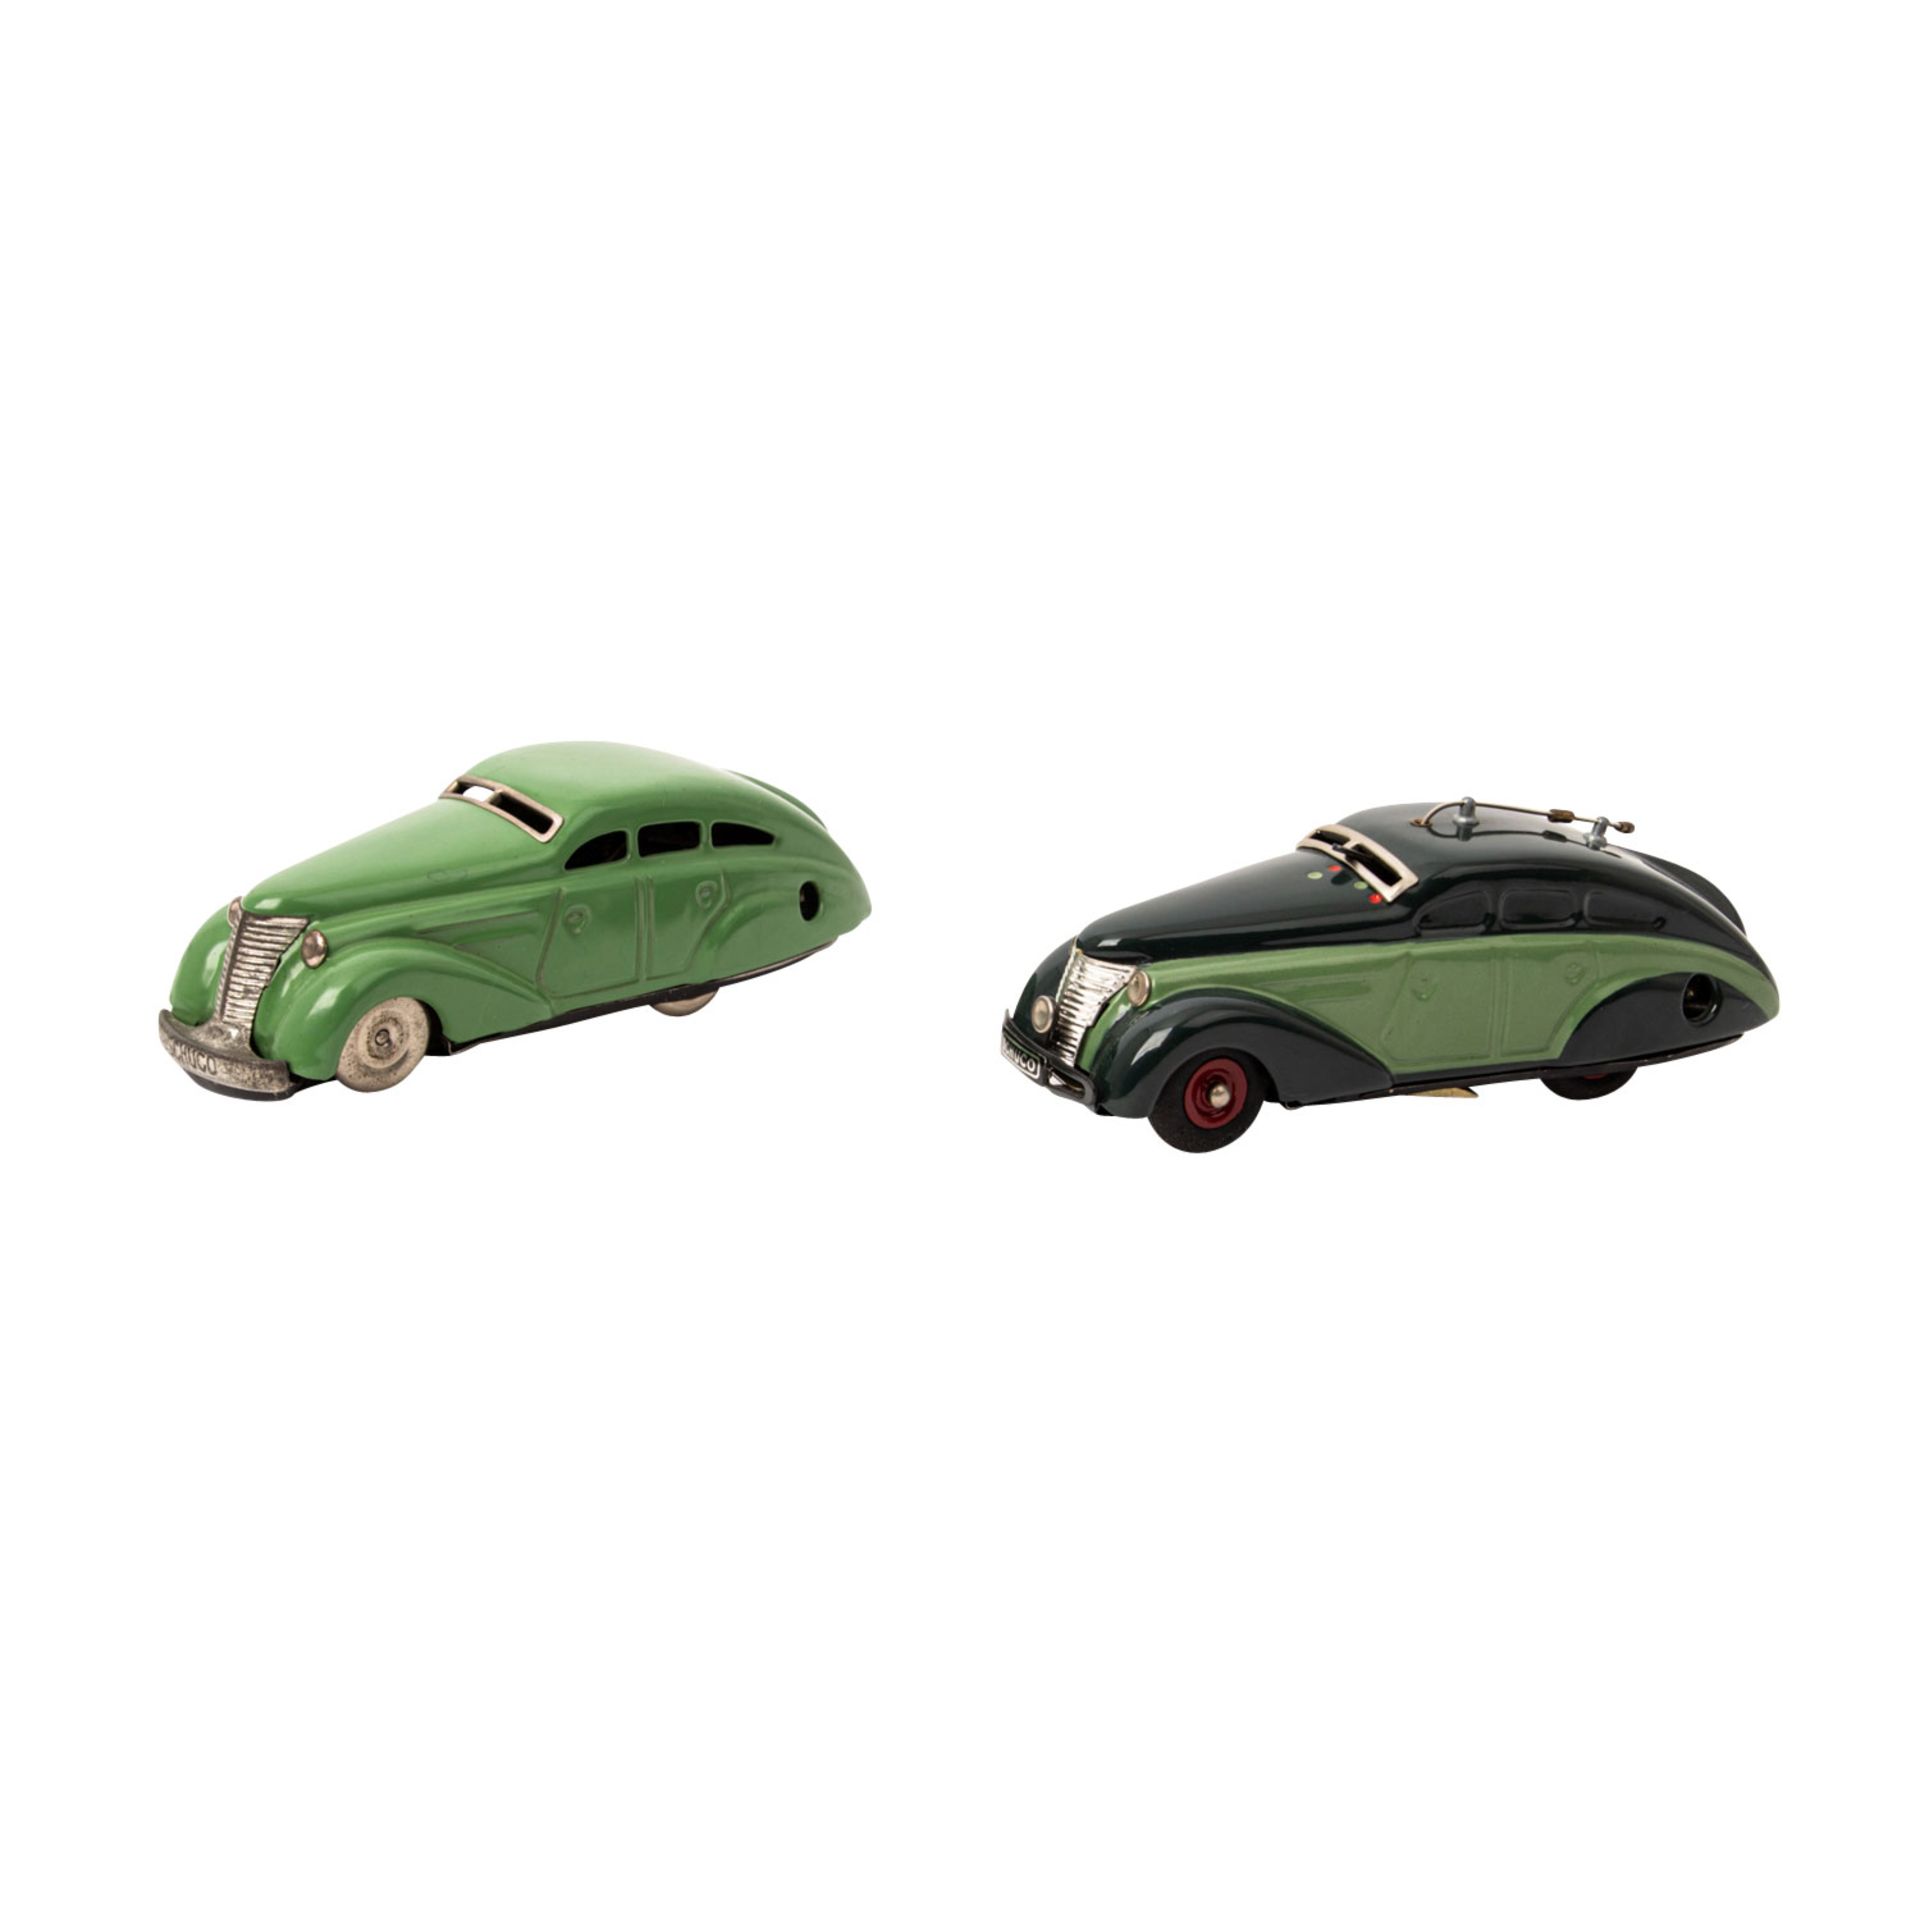 SCHUCO zwei Modellfahrzeuge "Radio 5000" und Wendeauto "1010", 1945-1949 und später,